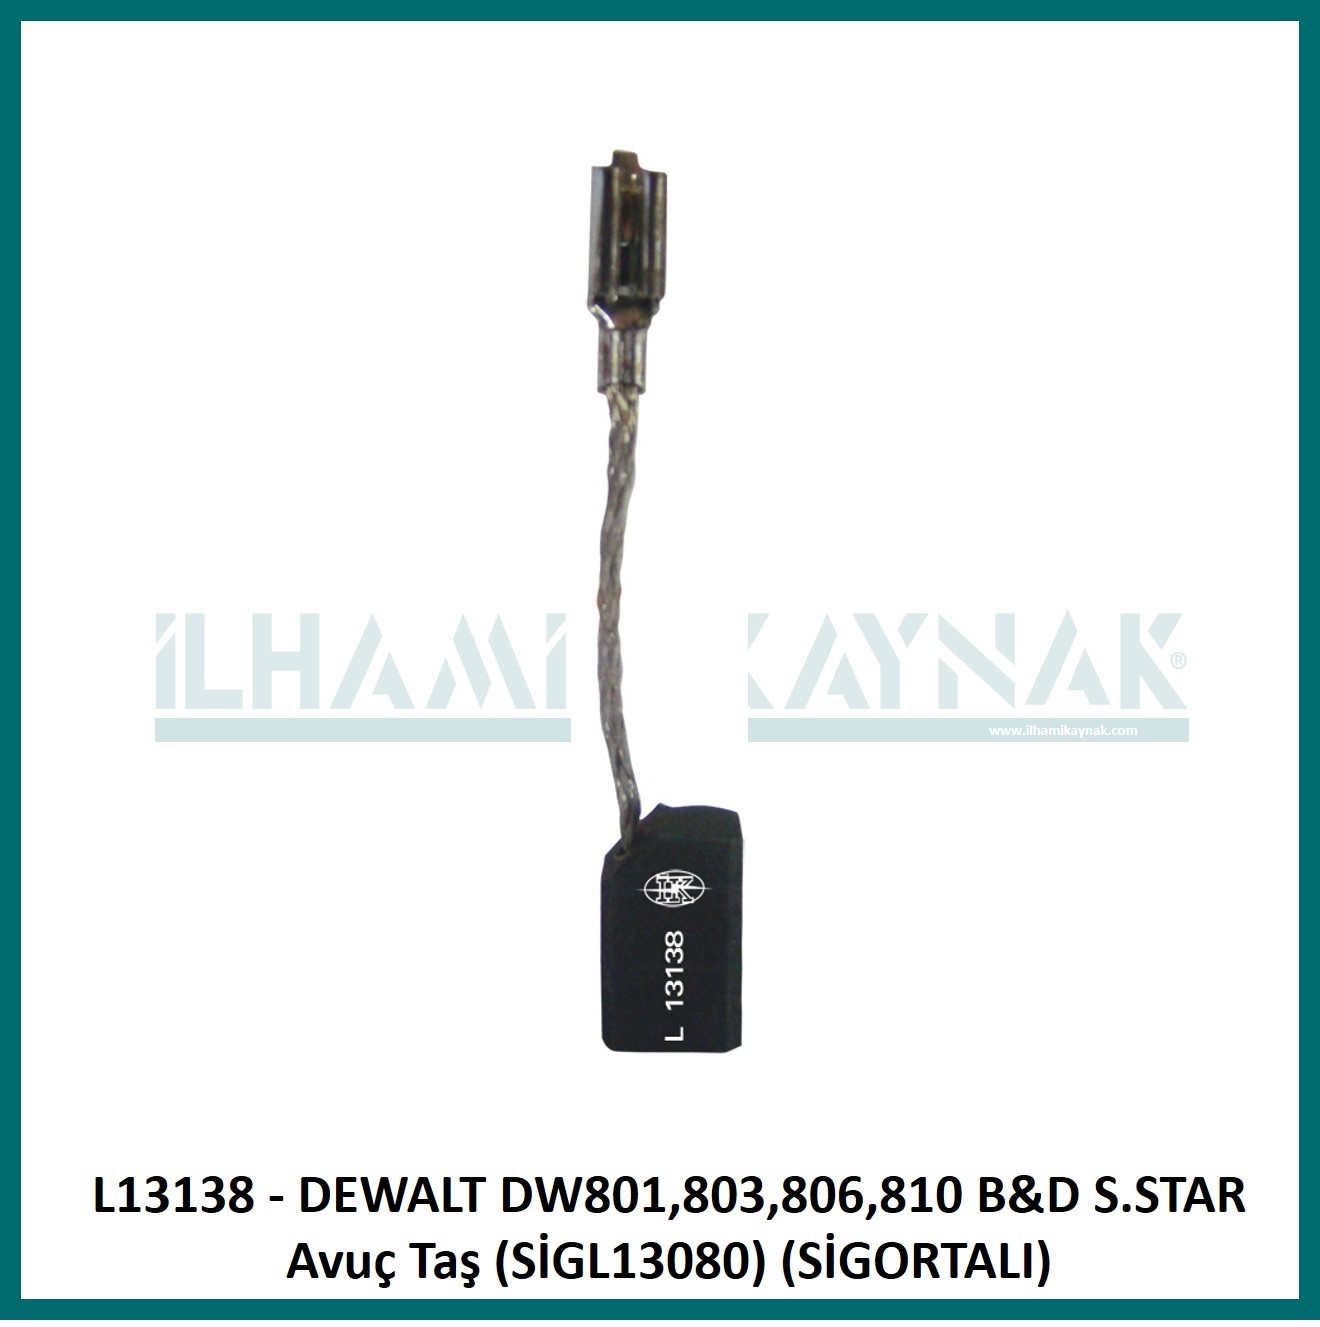 L13138 - DEWALT DW801,803,806,810 B&D S.STAR Avuç Taş (SİGL13080) (SİGORTALI) - 6.3*8*13.5 mm - 100 Adet